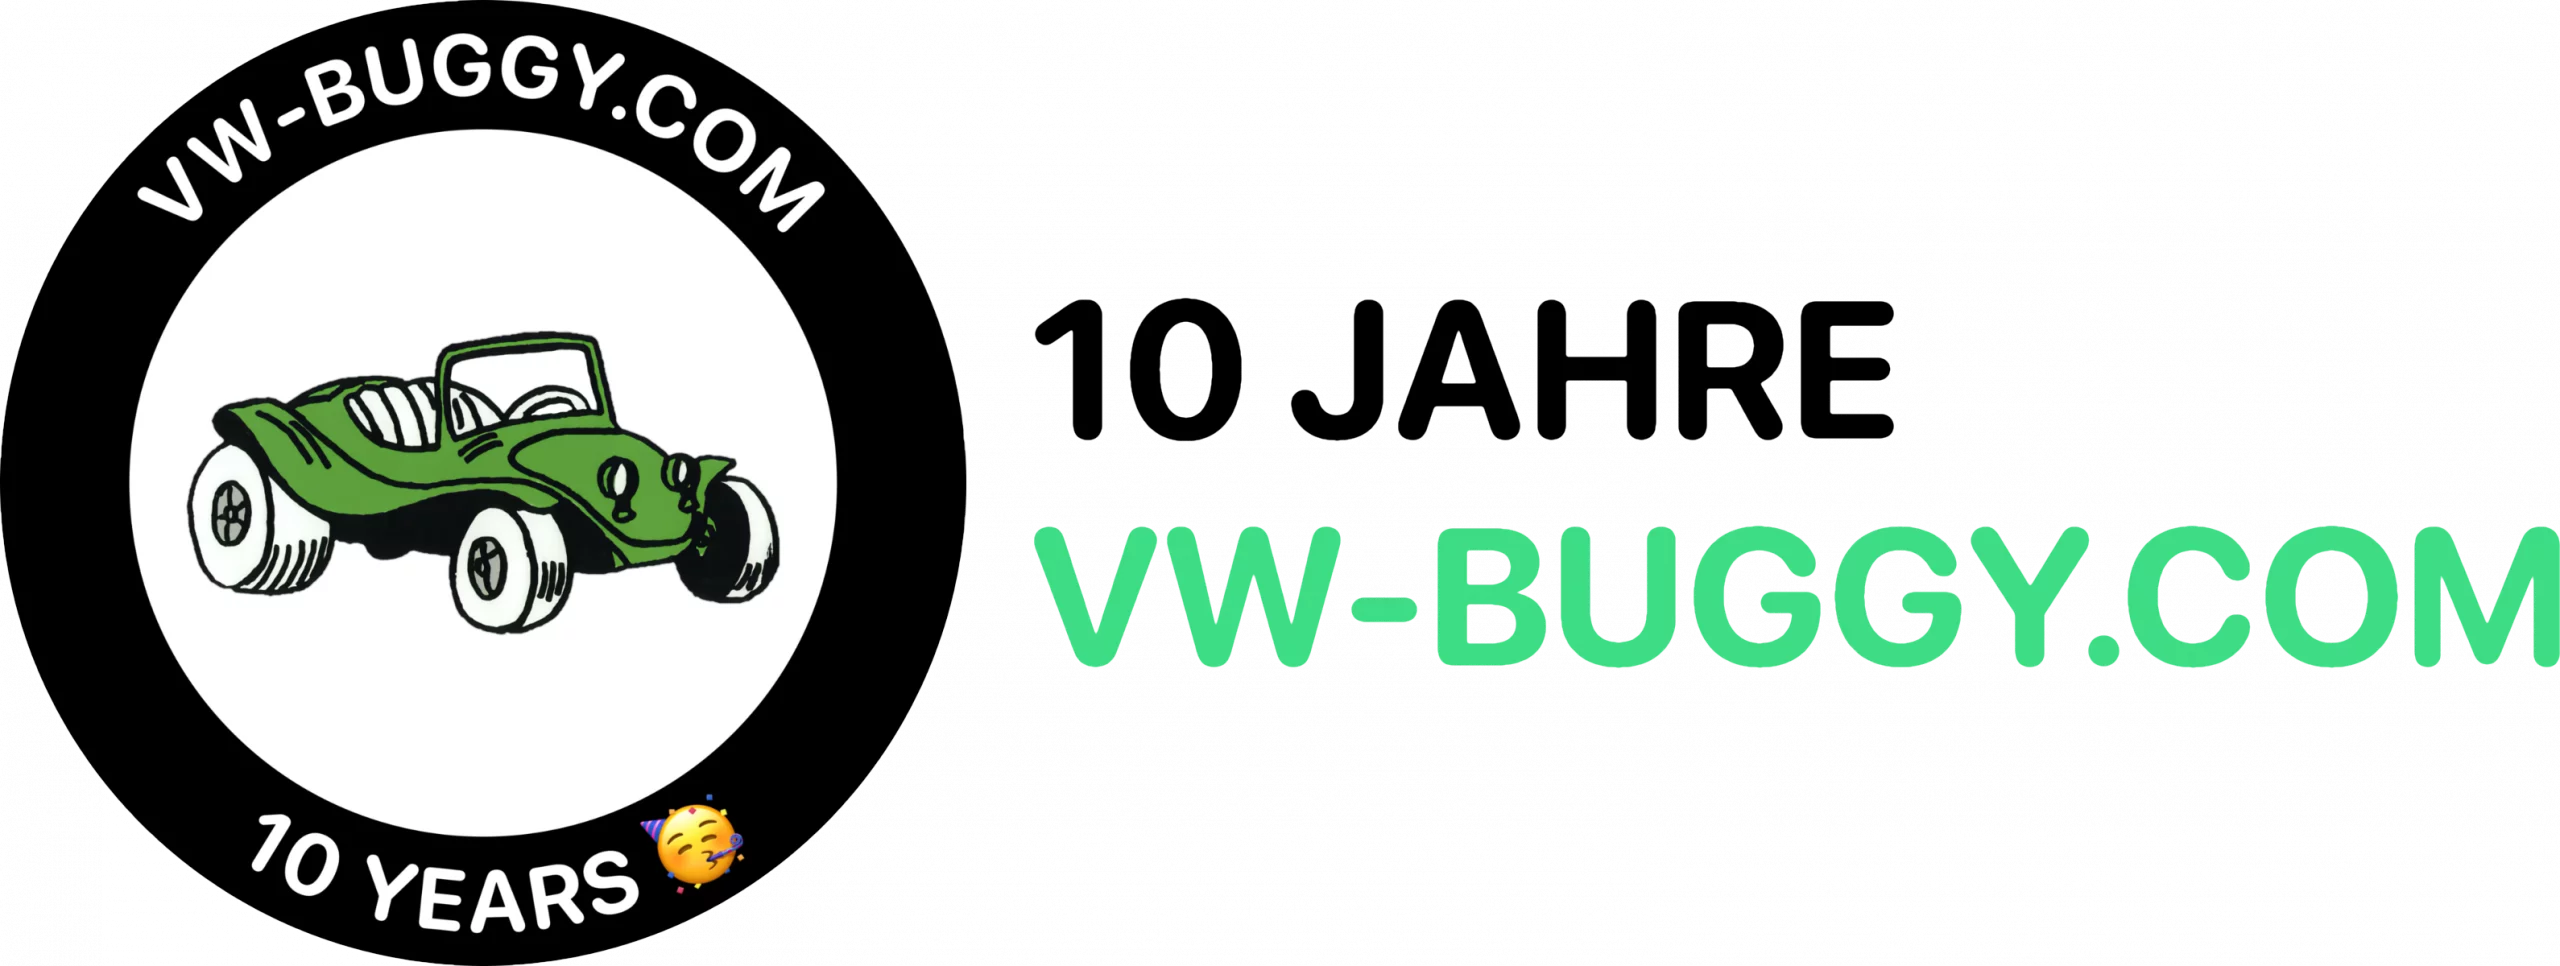 10 Jahre vw-buggy.com